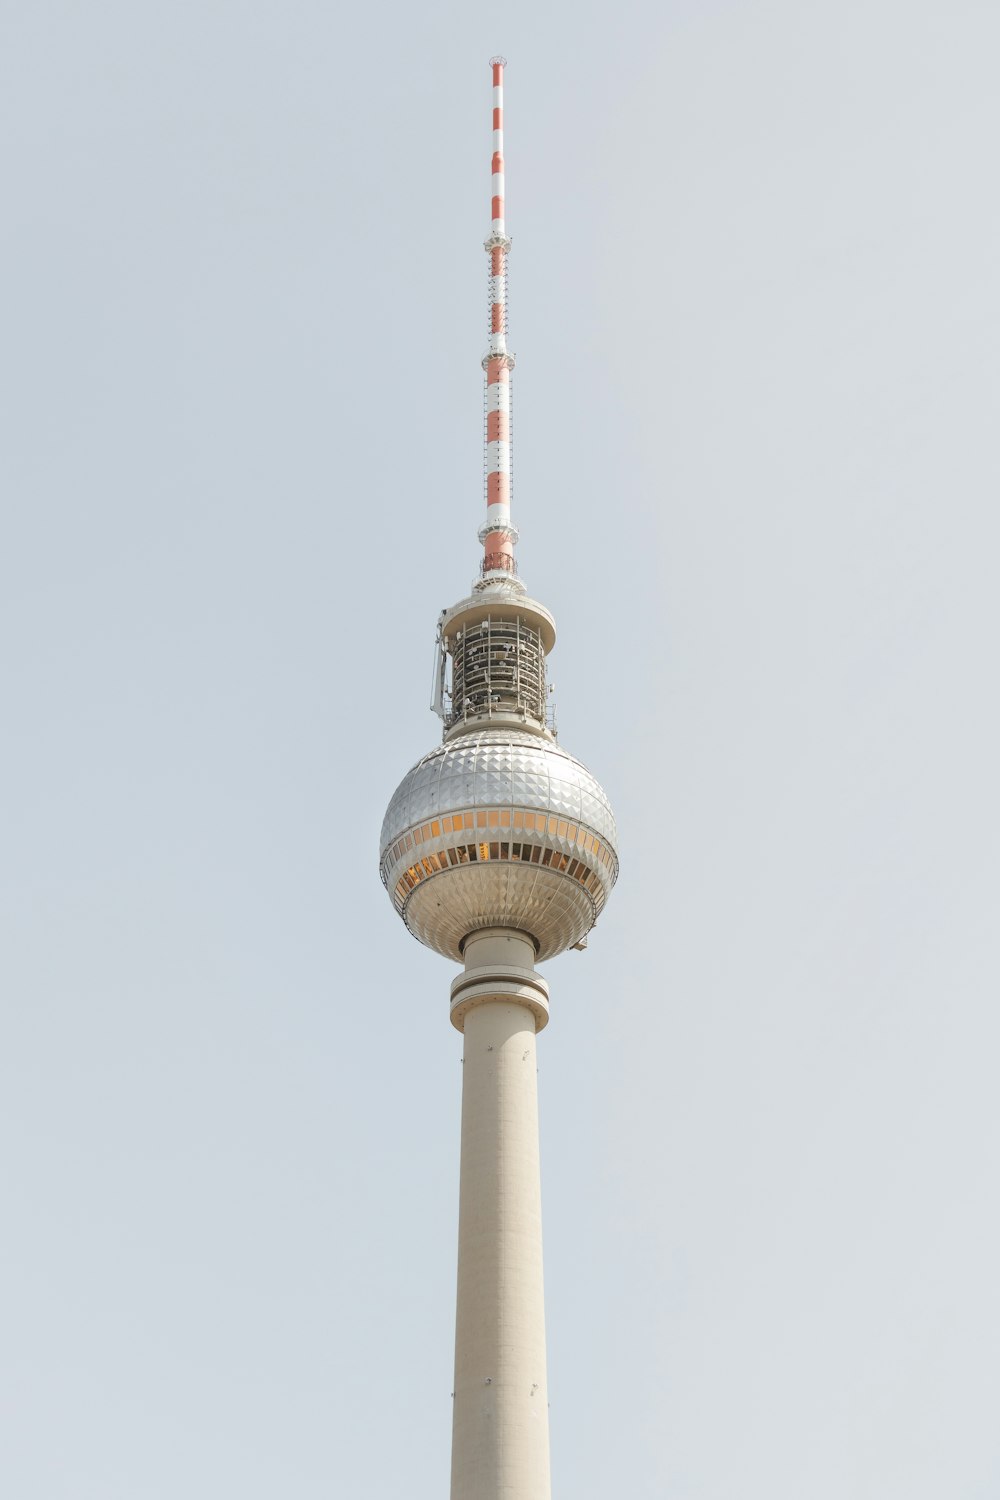 ein hoher Turm mit runder Spitze